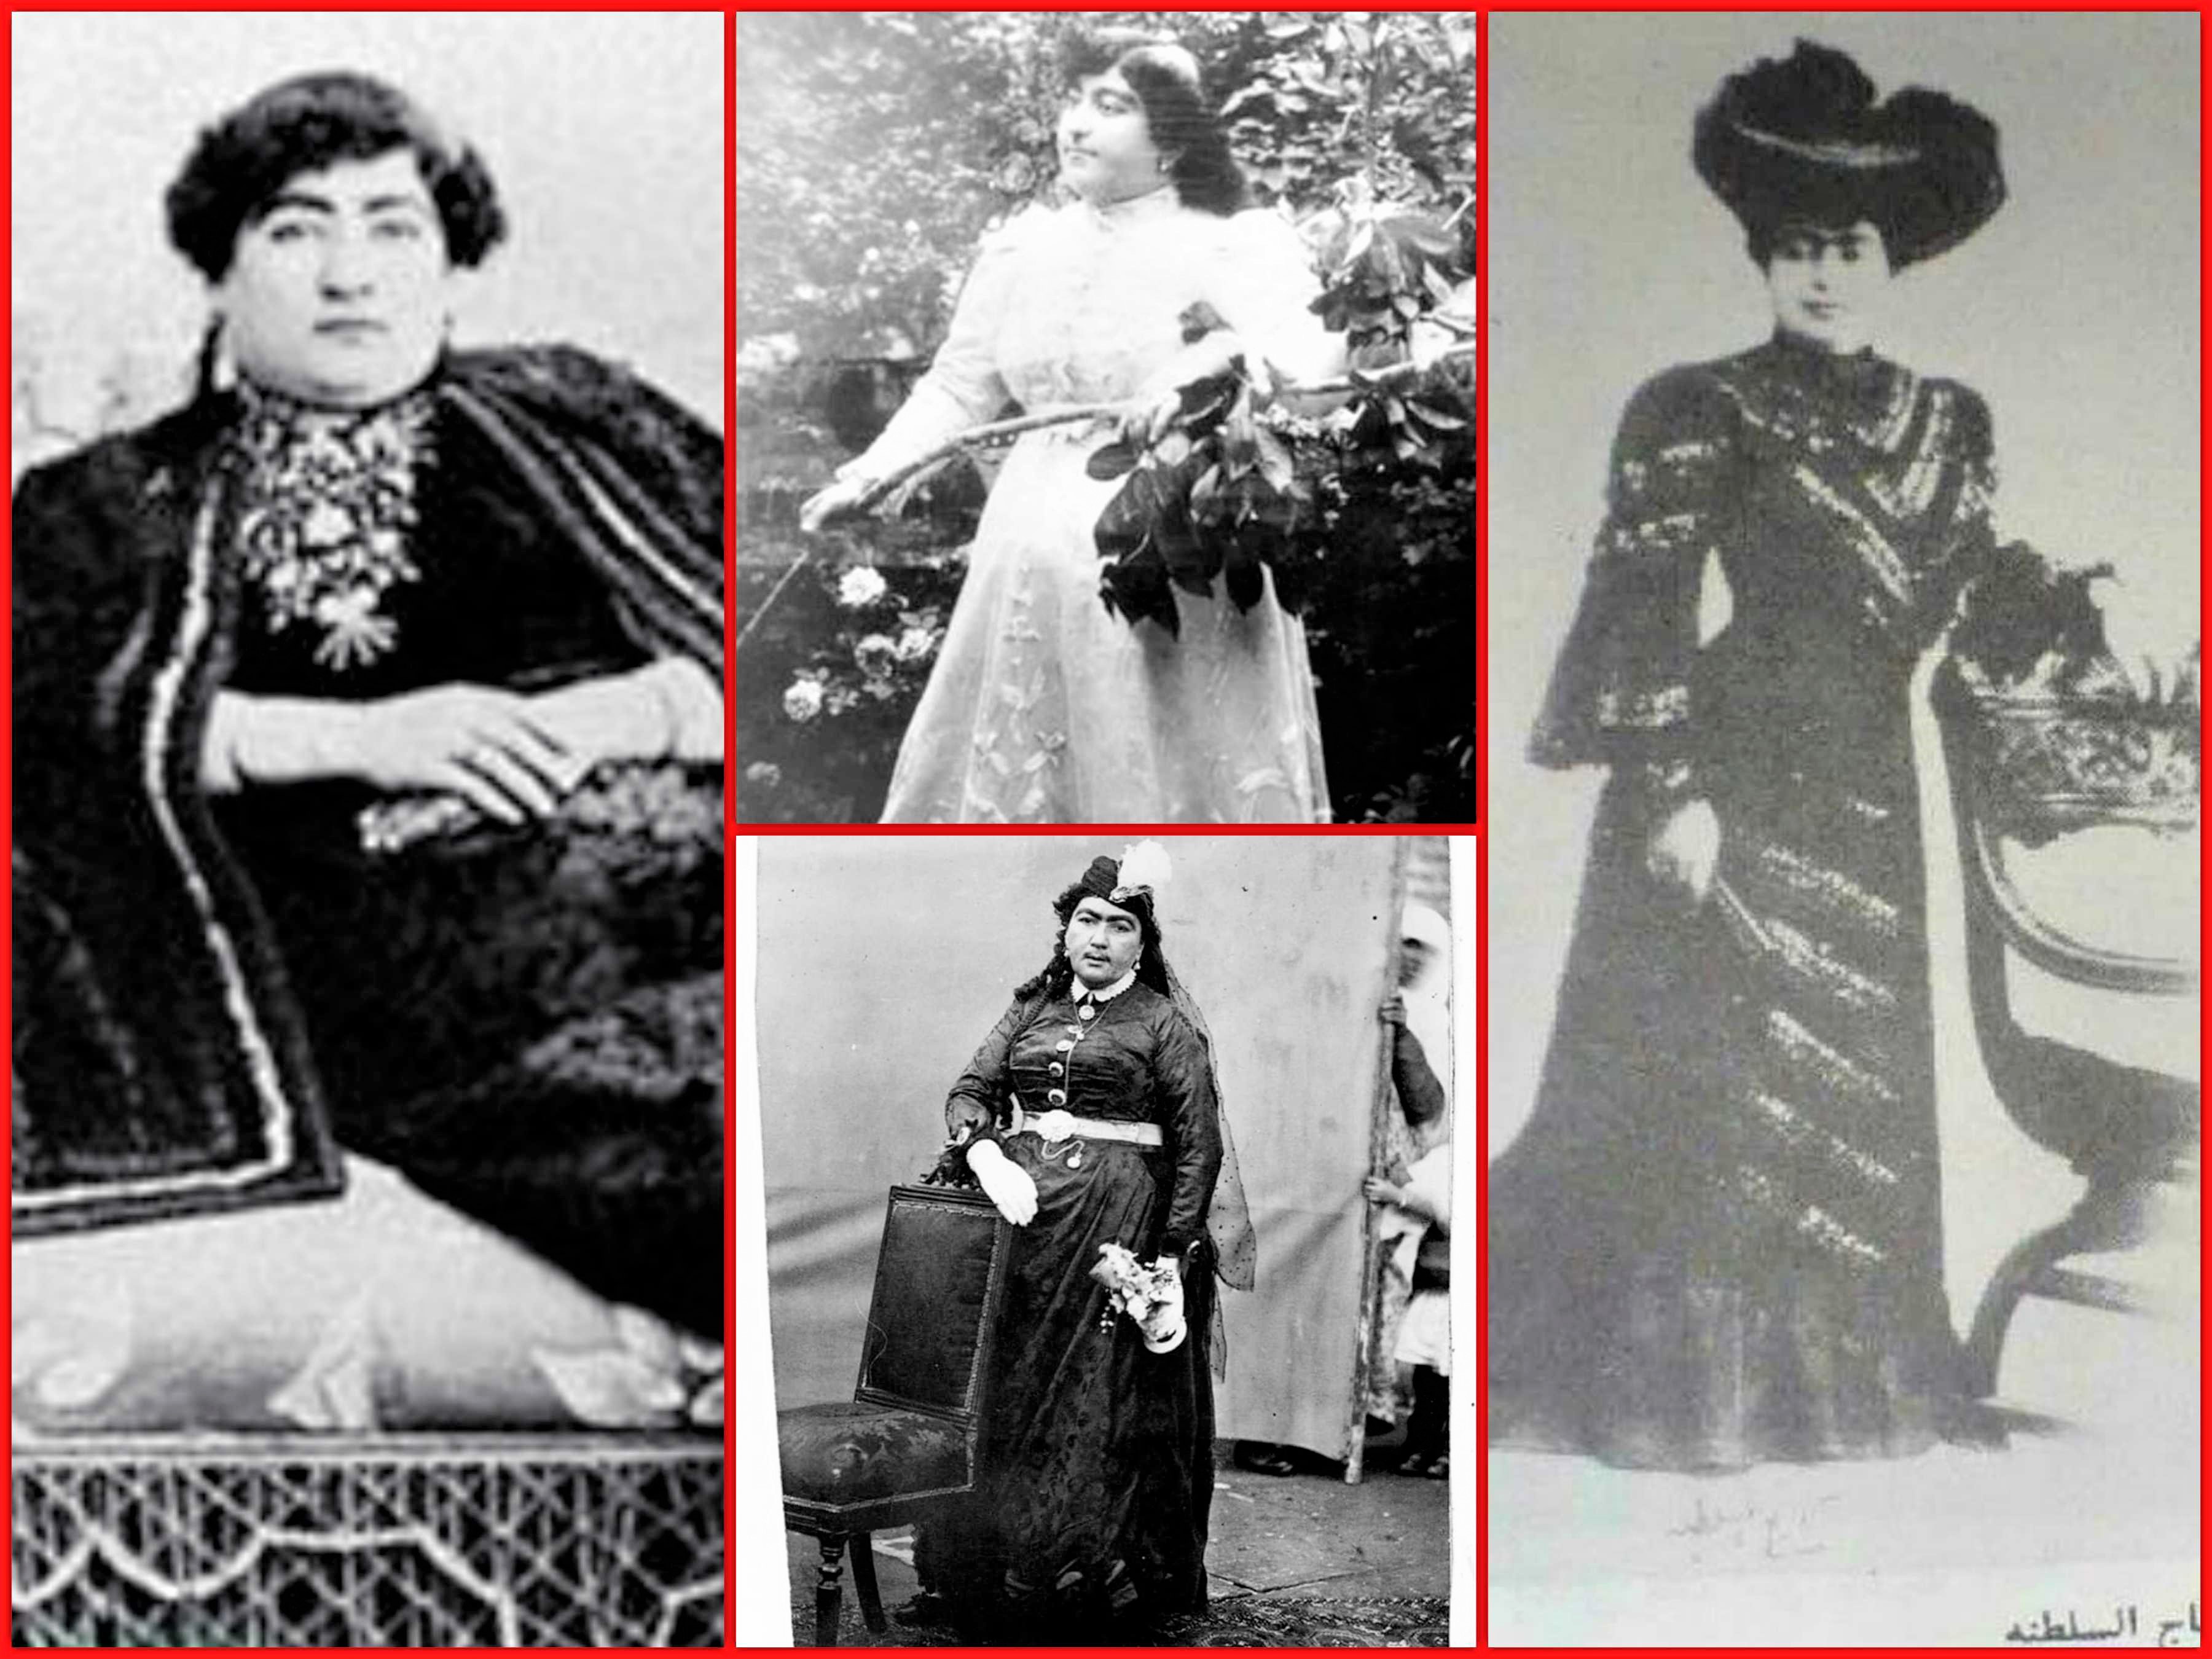 موزه پوشاک سلطنتی - تاثیر مد اروپا بر لباس زنان دربار قاجار